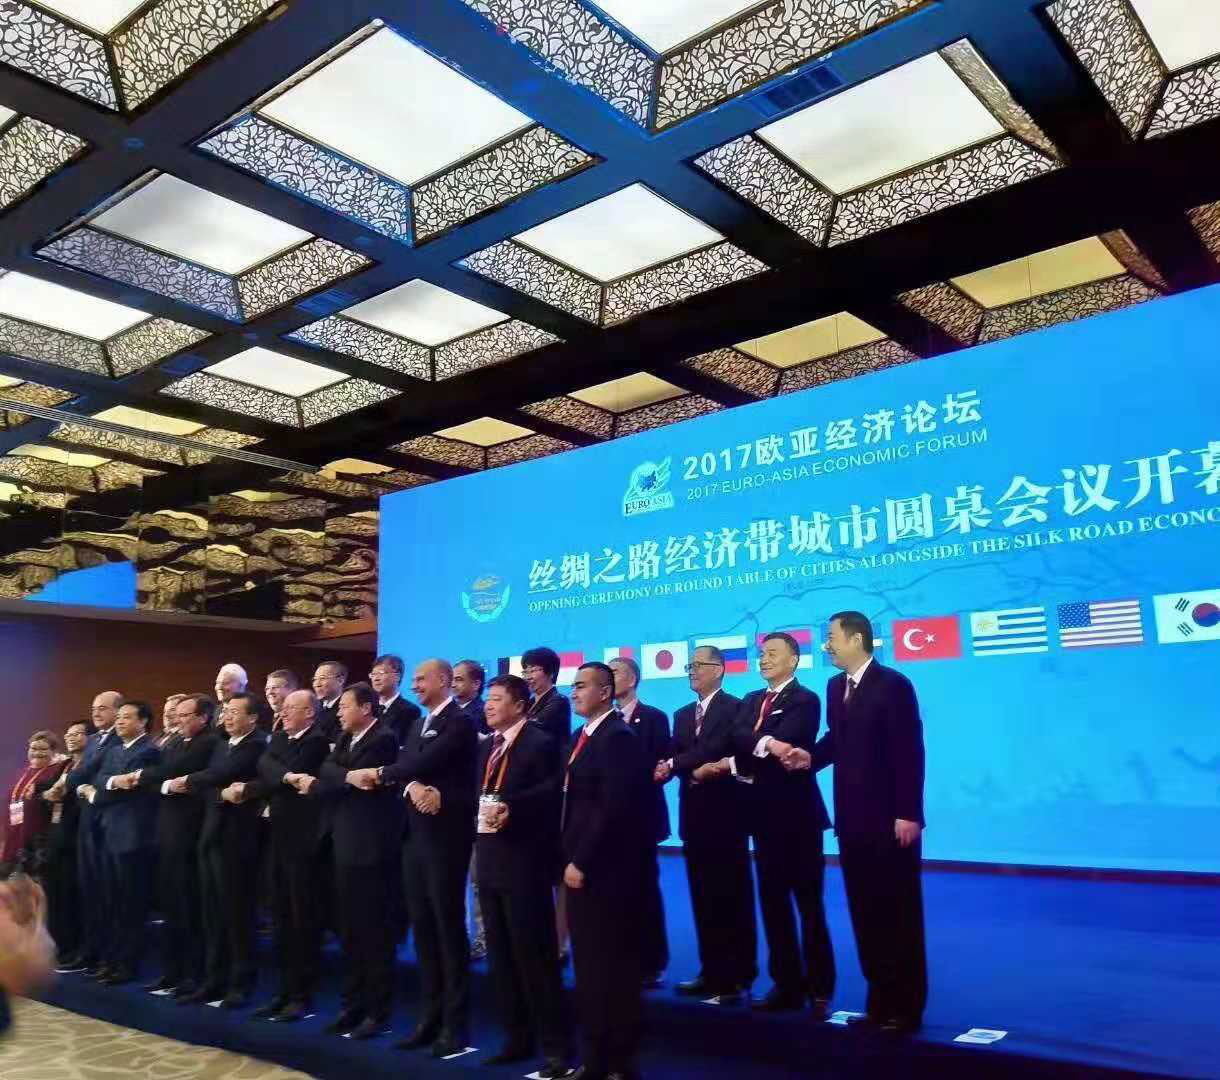 尚语翻译助力2017欧亚经济论坛丝绸之路会议开幕式，为开幕式提供多语种同声传译